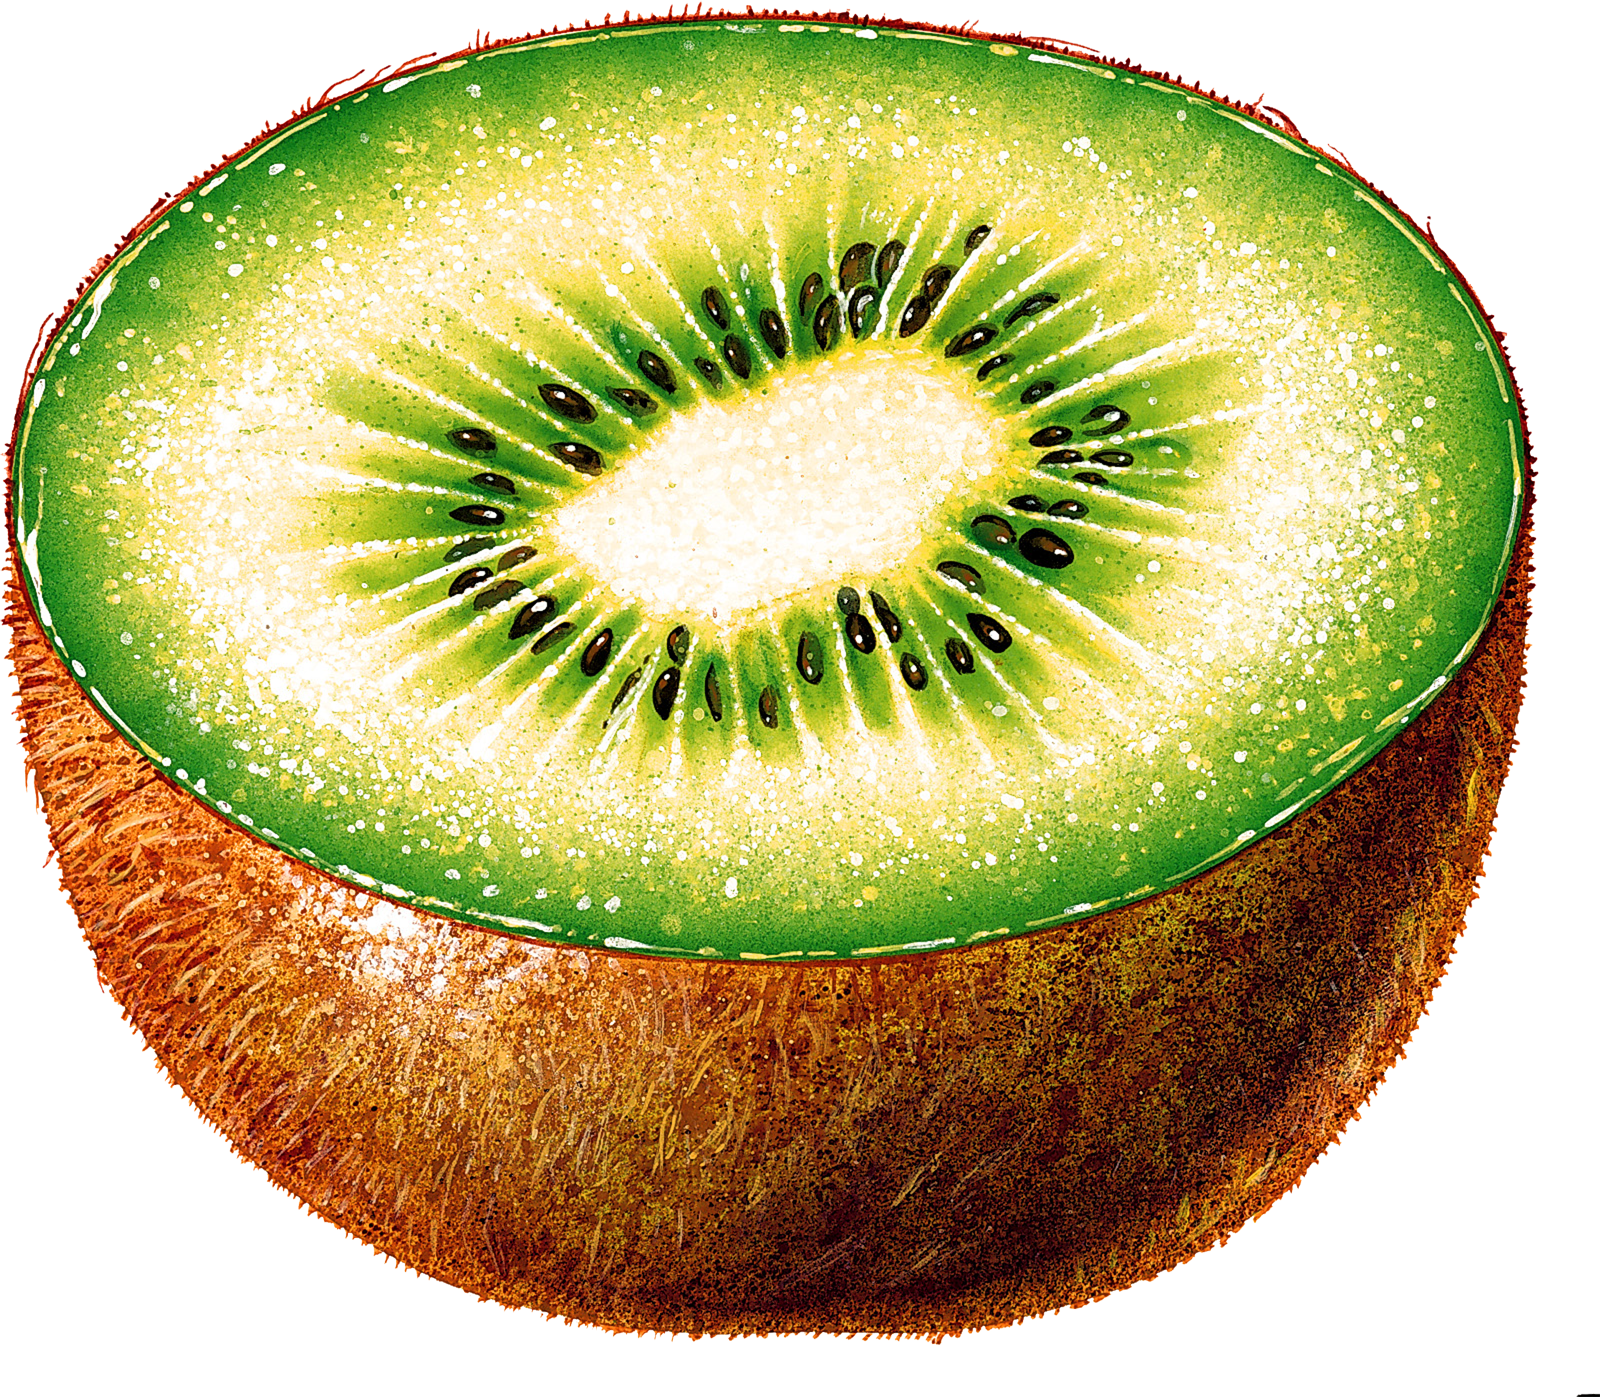 Kiwi PNG image, free fruit ki